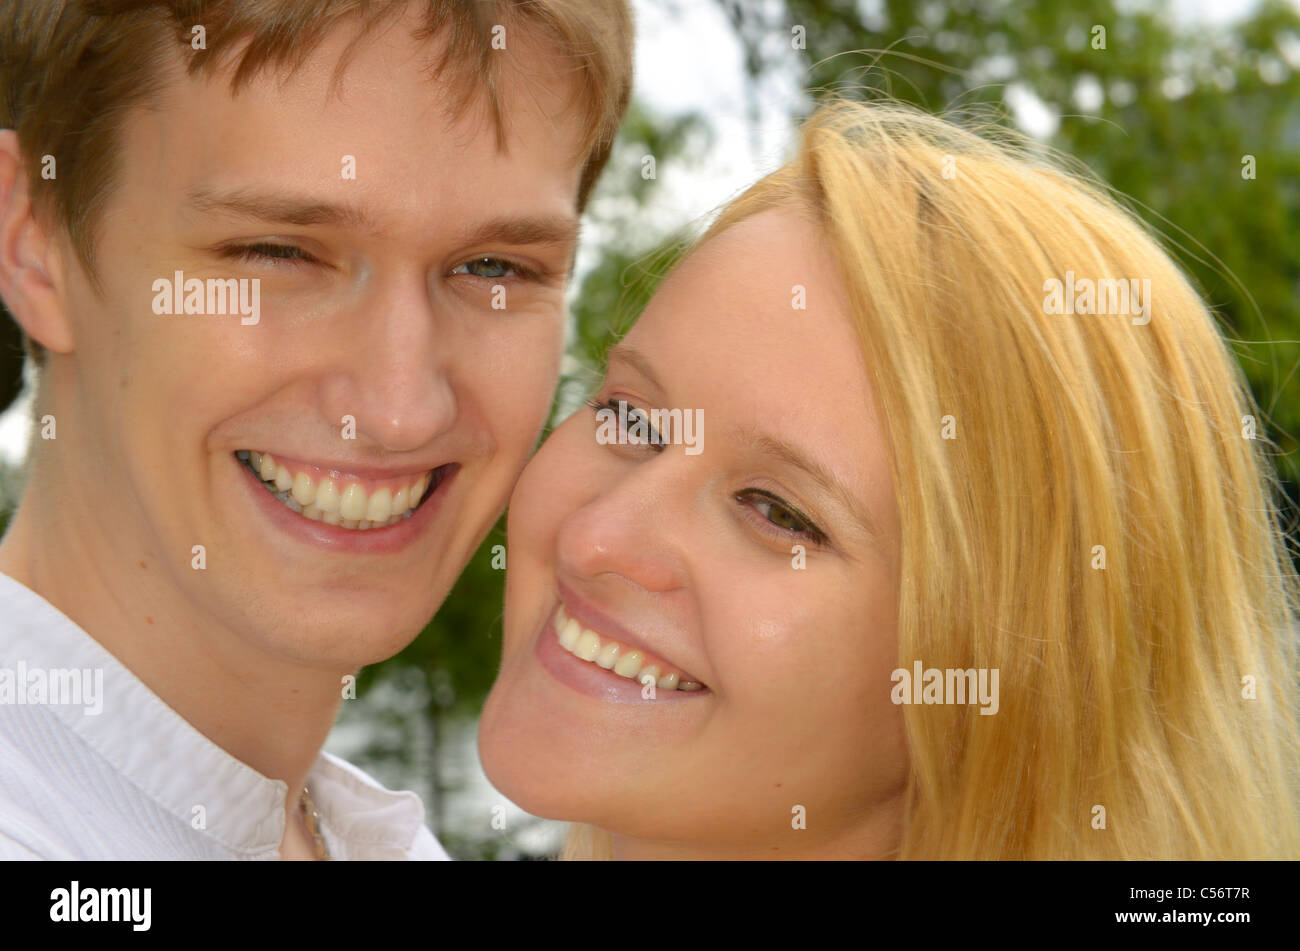 Smiling faces of bond white Eastern European couple Stock Photo